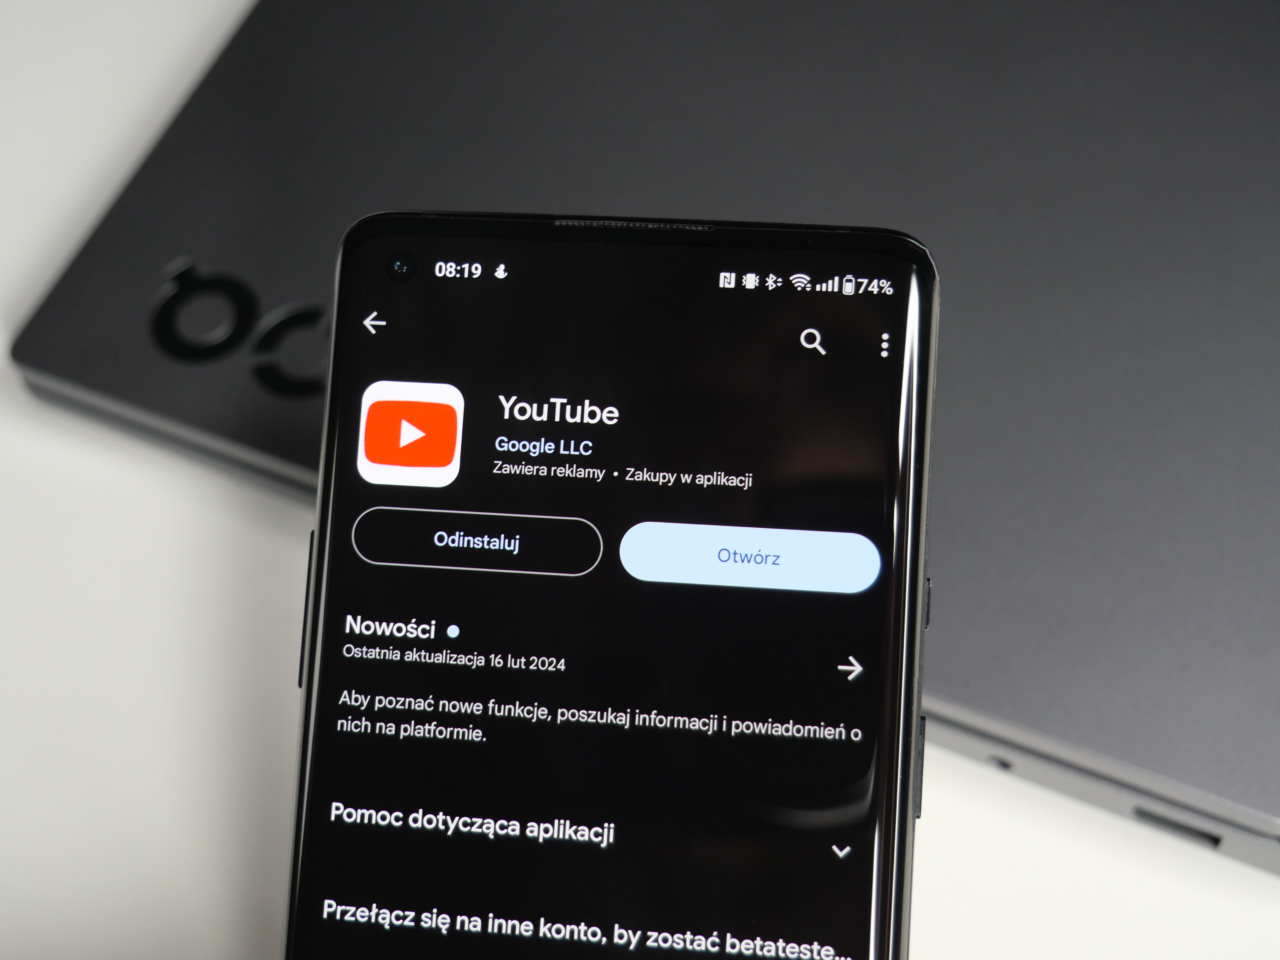 Smartfon wyświetlający informacje o aplikacji YouTube w sklepie z aplikacjami z przyciskami "Odinstaluj" i "Otwórz", z laptopem w tle.